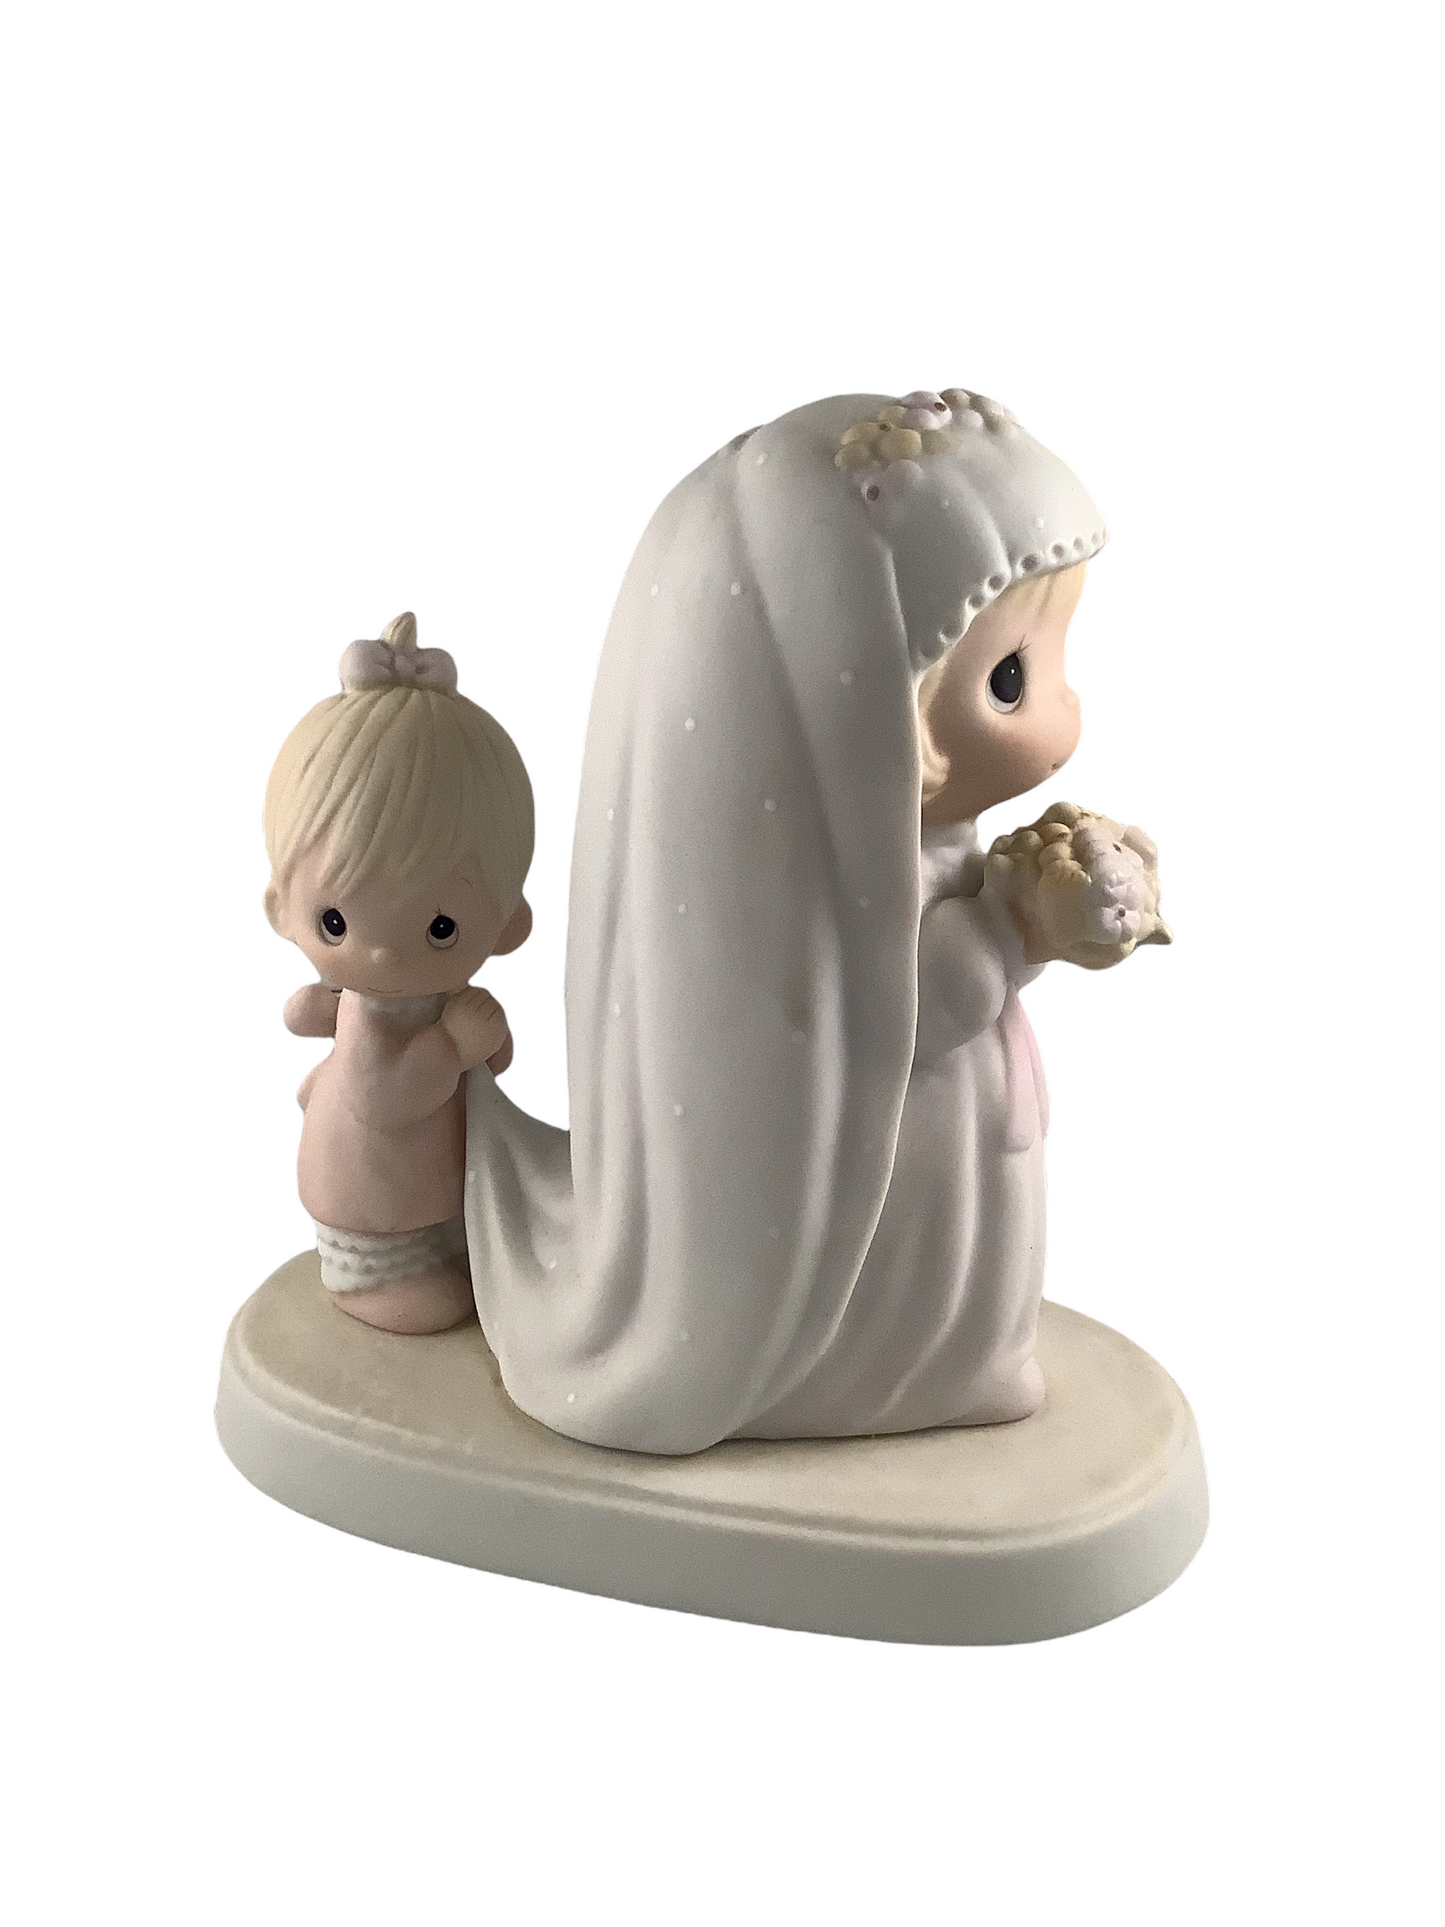 God Bless The Bride - Precious Moment Figurine